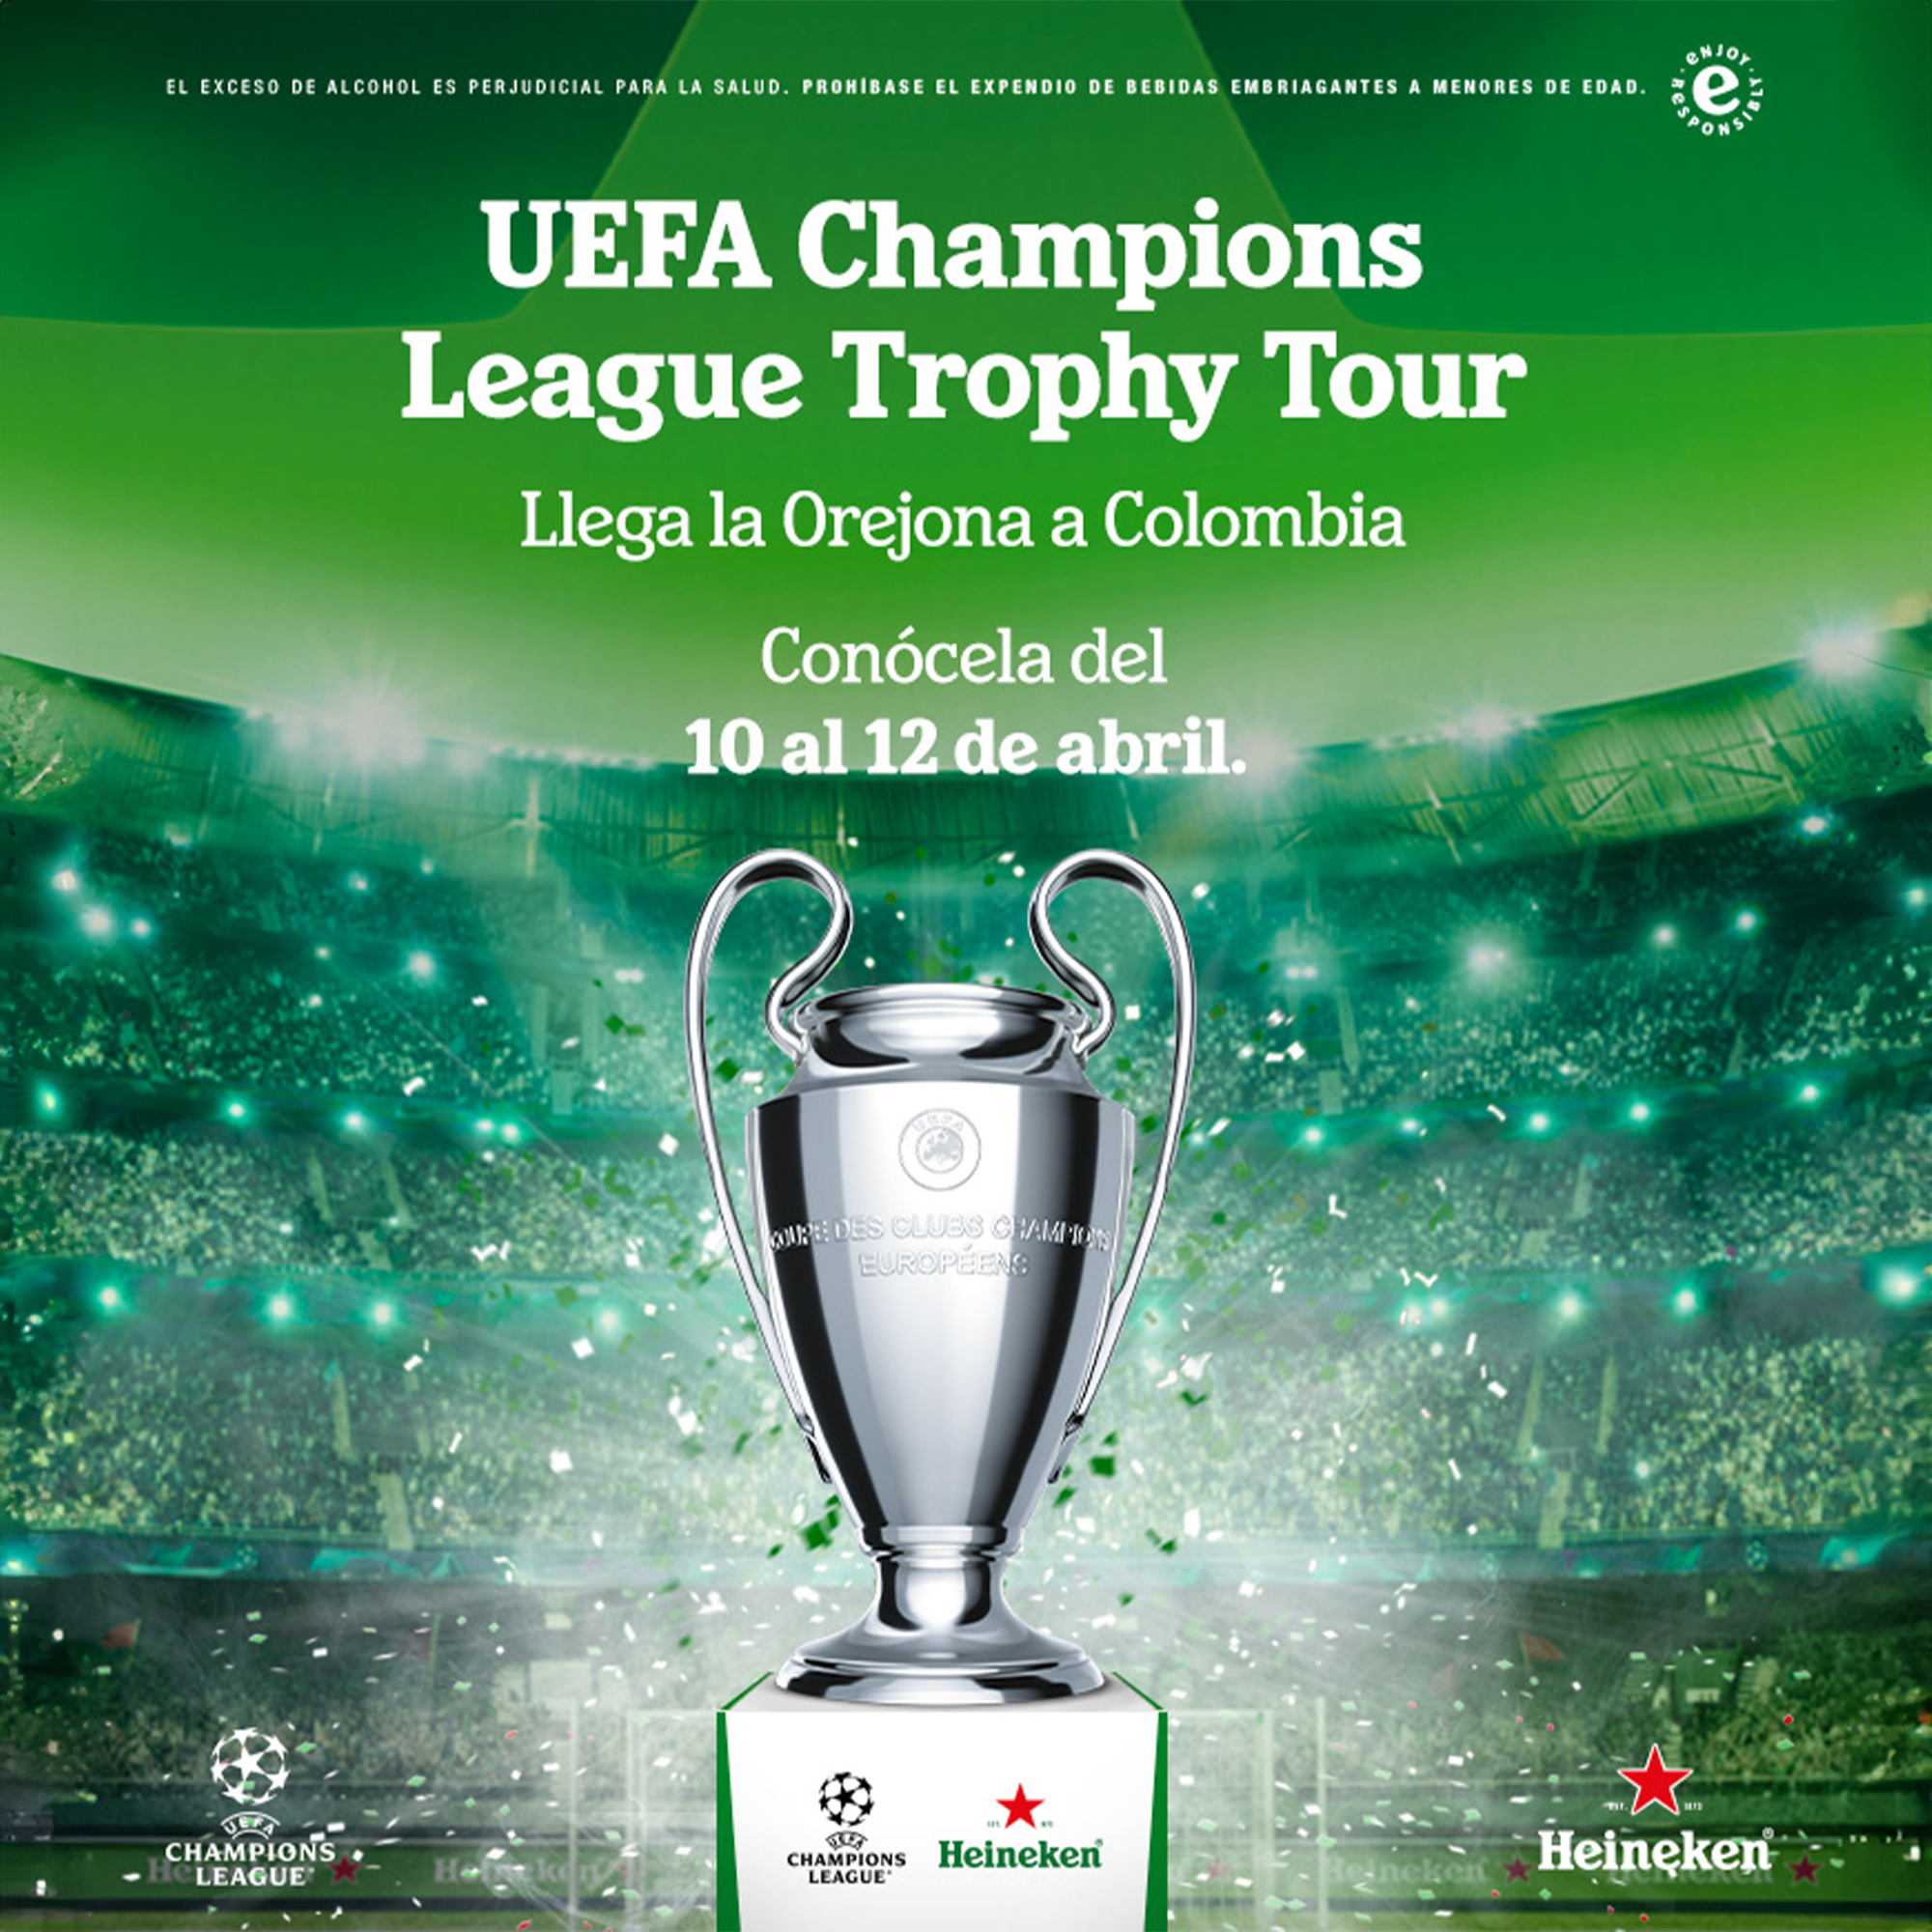 El trofeo de la UEFA Champions League regresará a Colombia por segunda vez gracias a Heineken: lugares y horarios para verlo; futbolistas invitados.